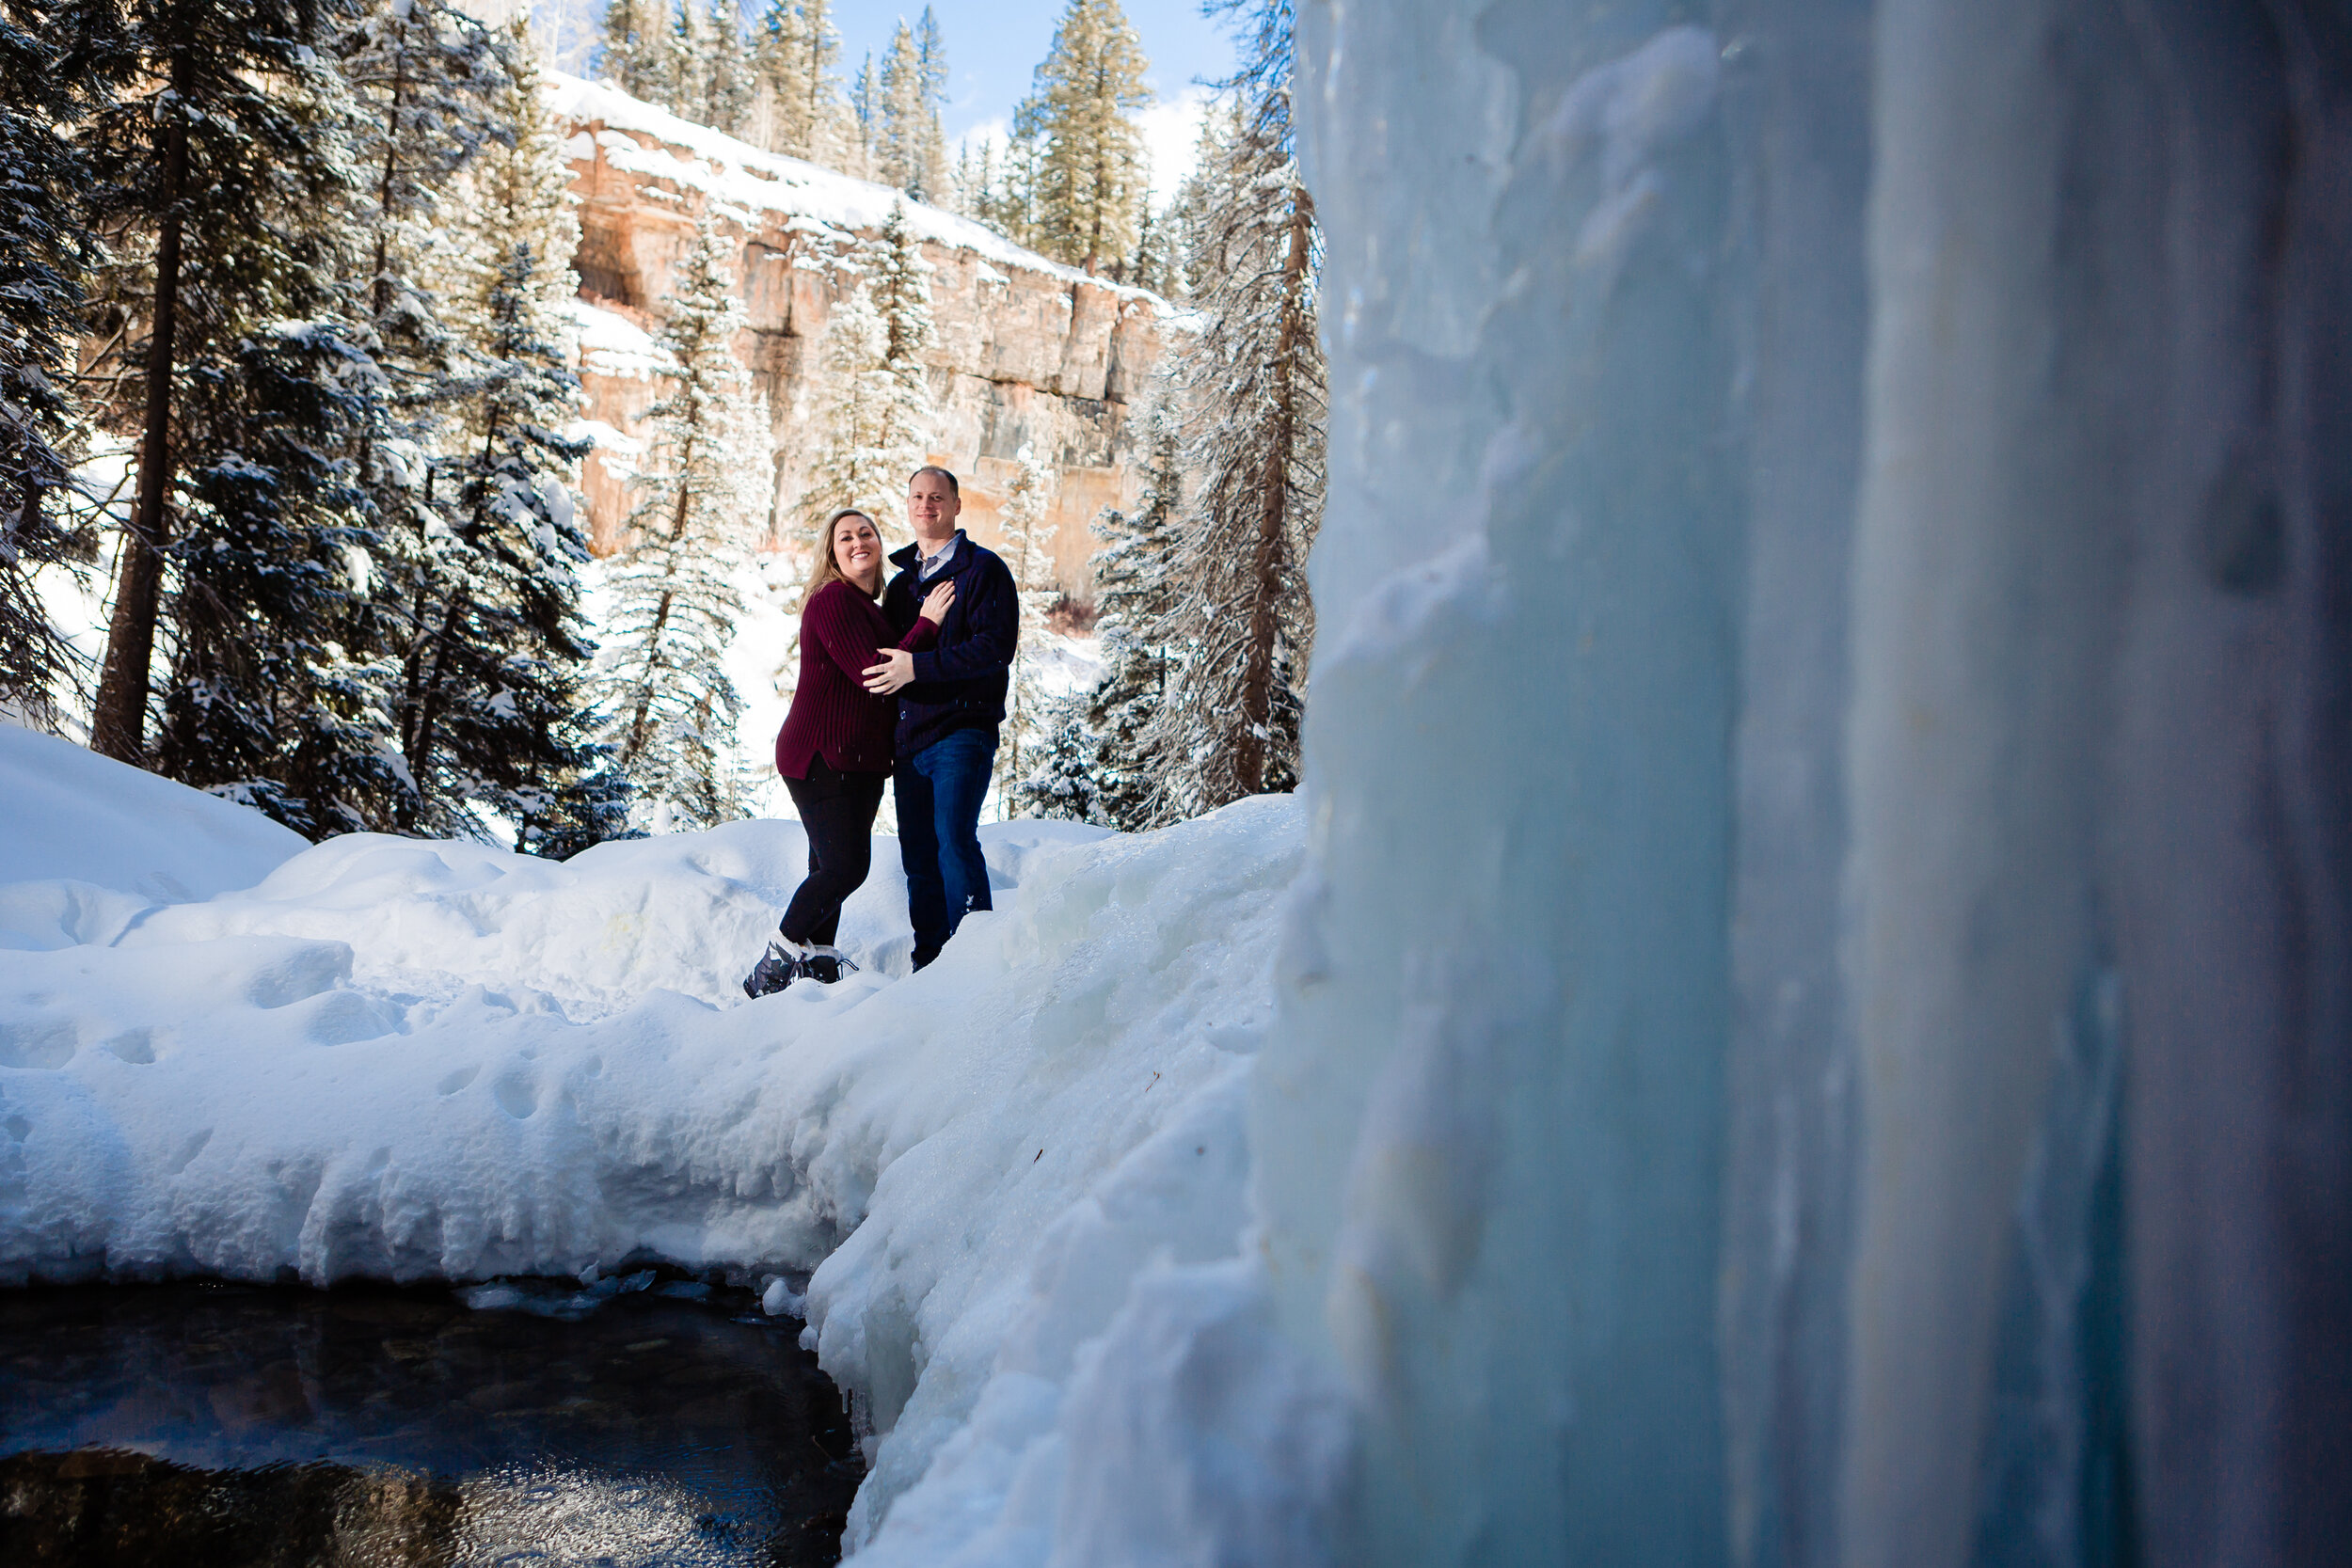  Durango colorado winter engagement photos  Cascade creek  Waterfalls frozen  ©Alexi Hubbell Photography 